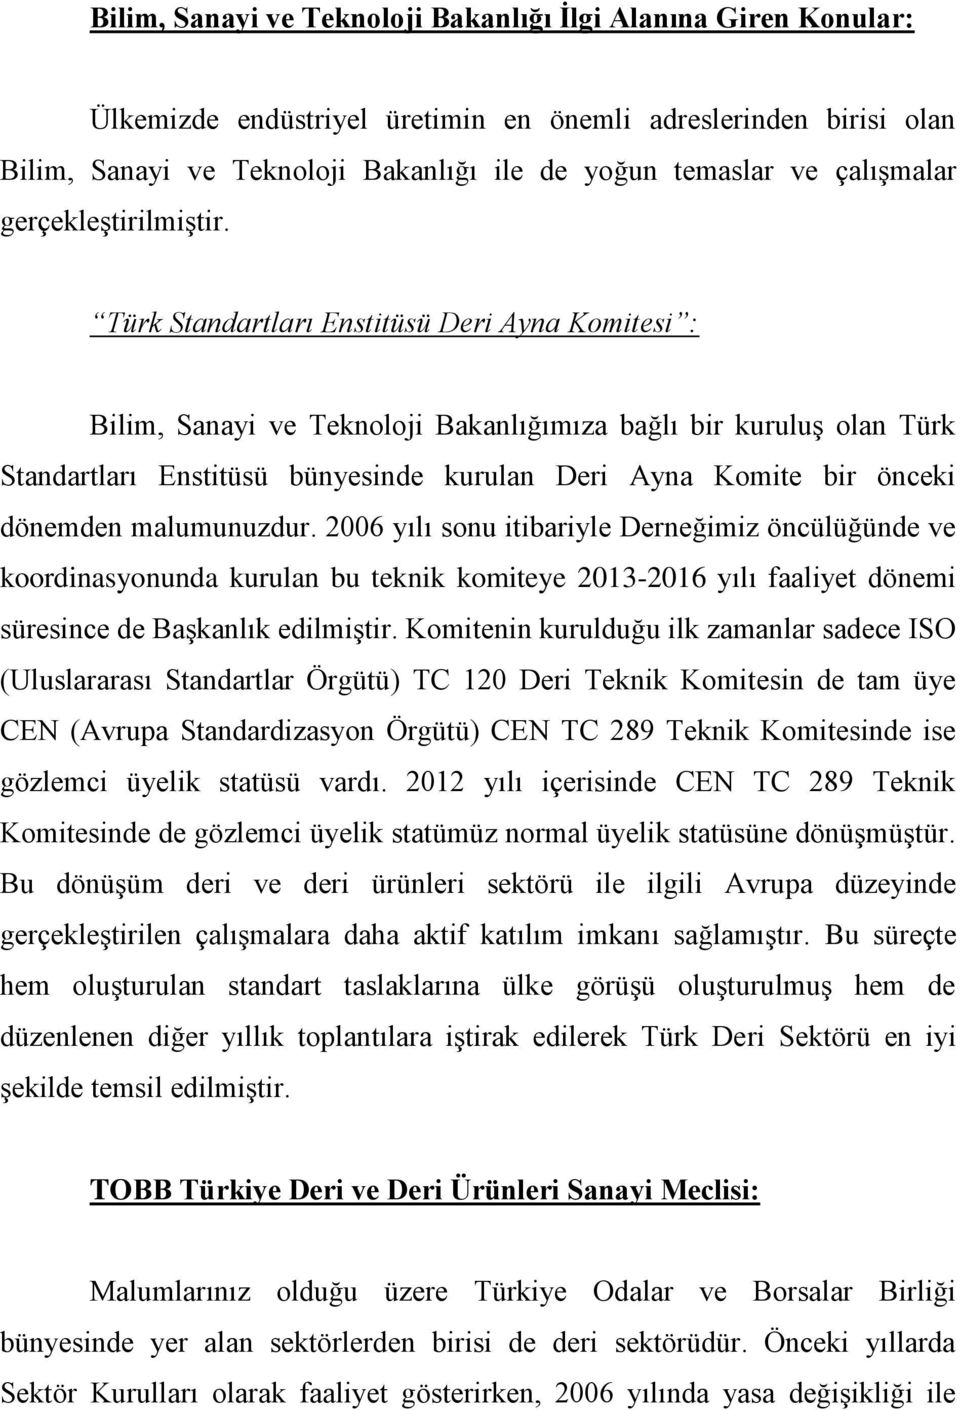 Türk Standartları Enstitüsü Deri Ayna Komitesi : Bilim, Sanayi ve Teknoloji Bakanlığımıza bağlı bir kuruluş olan Türk Standartları Enstitüsü bünyesinde kurulan Deri Ayna Komite bir önceki dönemden